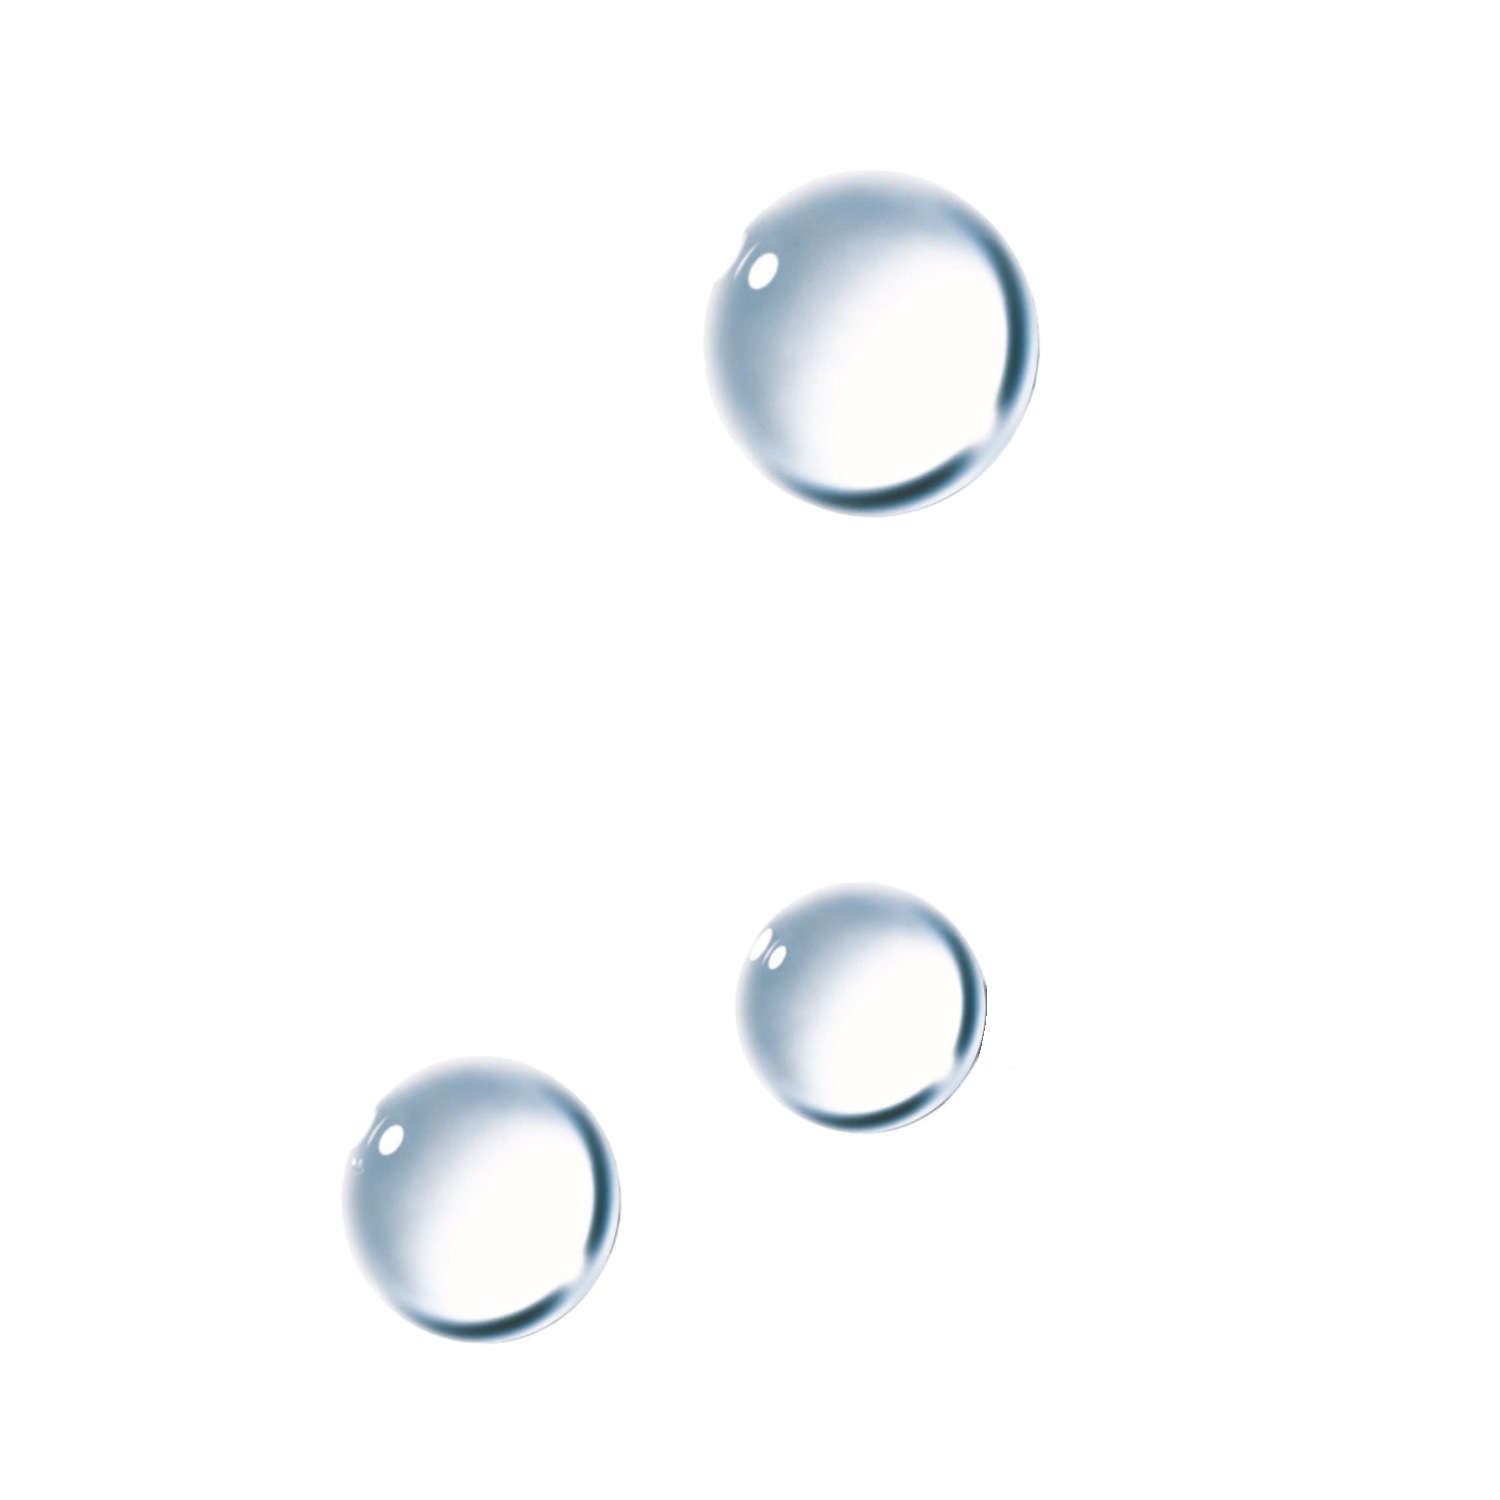 Ля Рош-Позе Ультра вода мицеллярная для чувствительной склонной к аллергии кожи 400мл ля рош позе ультра вода мицеллярная для чувствительной кожи 200мл м0365702